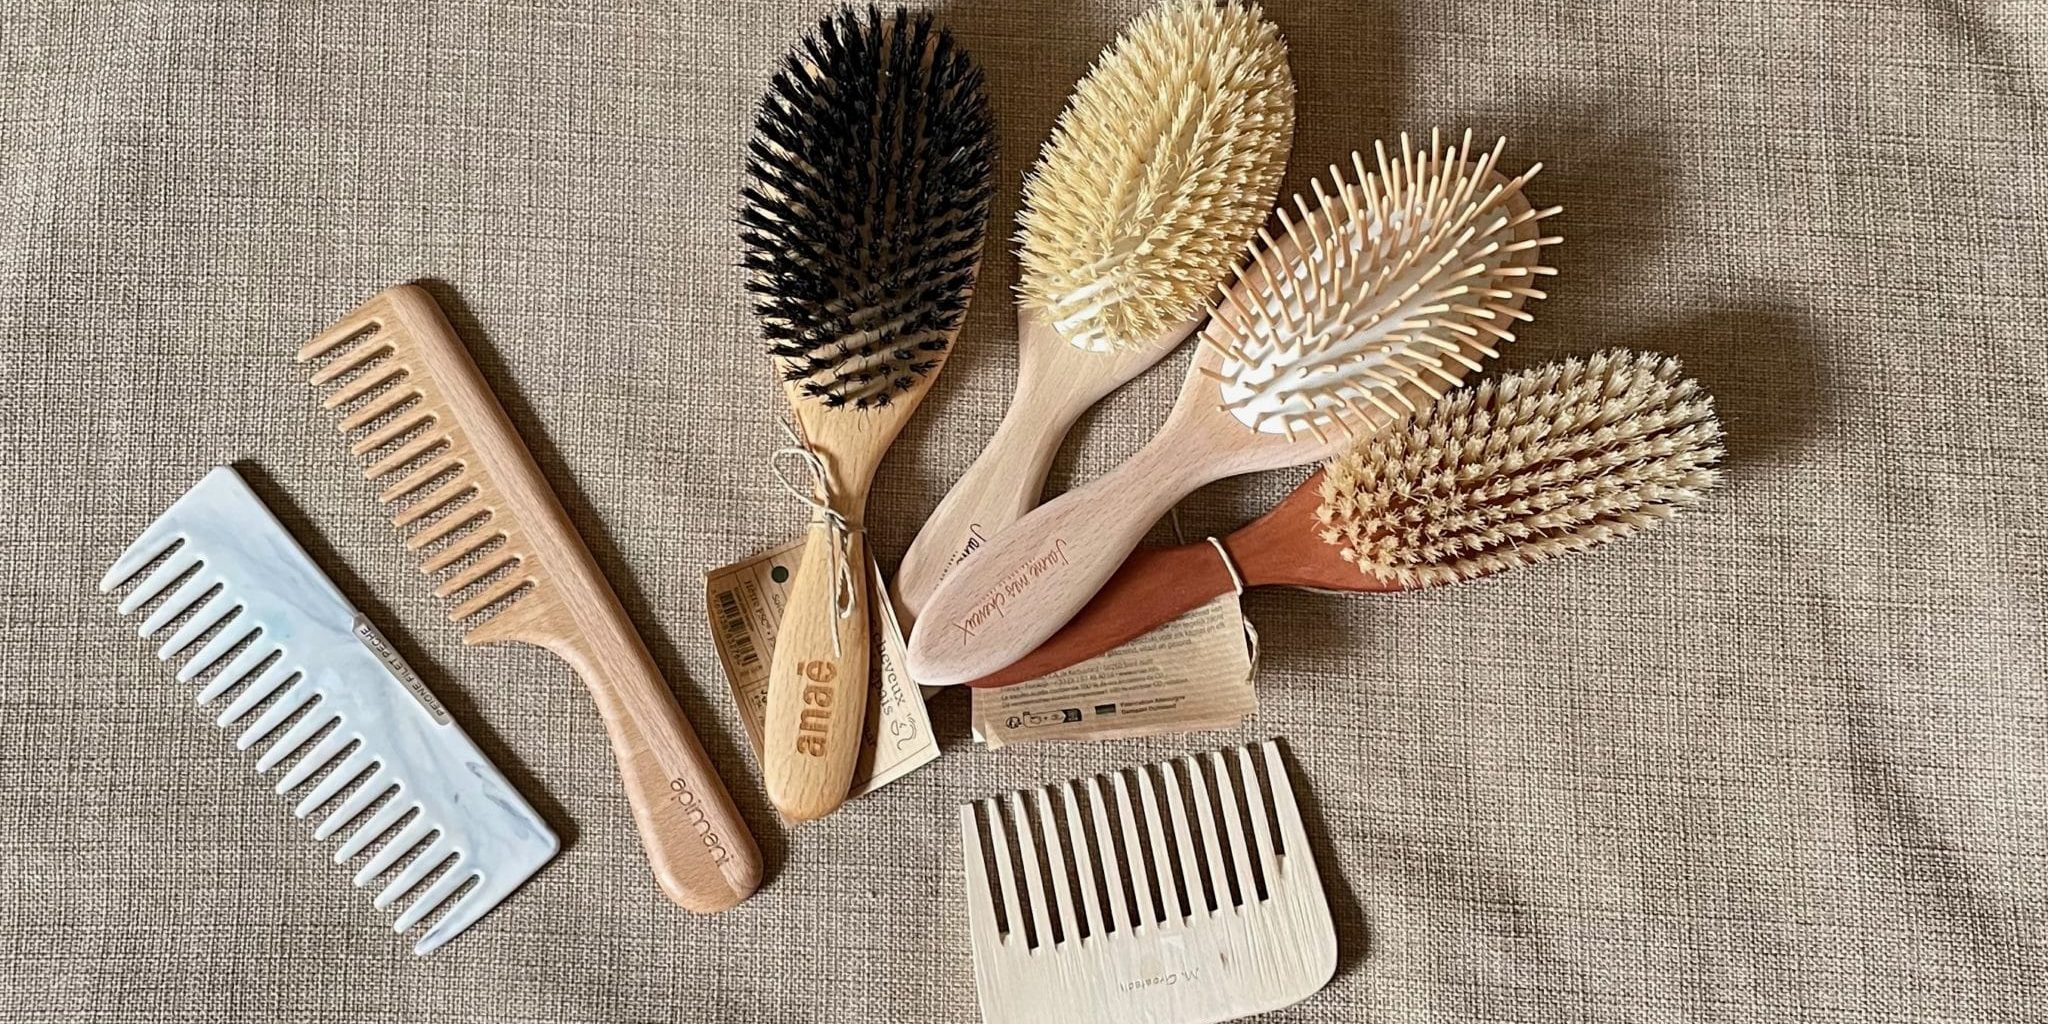 Peigne ou brosse : quel outil choisir selon son type de cheveux ? 